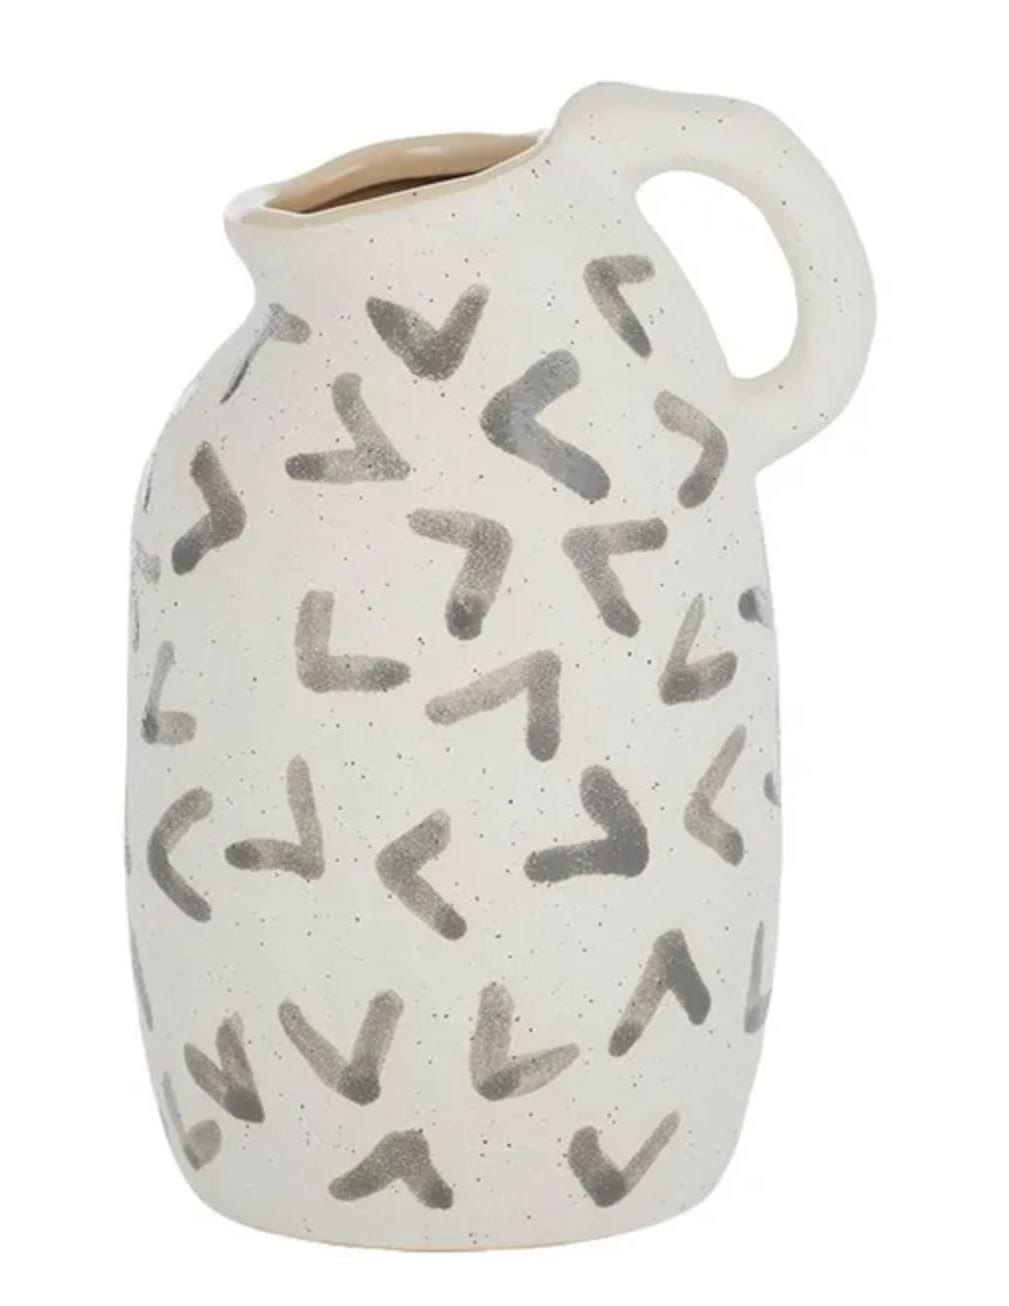 Morce ceramic vase 12X17.5CM white/grey